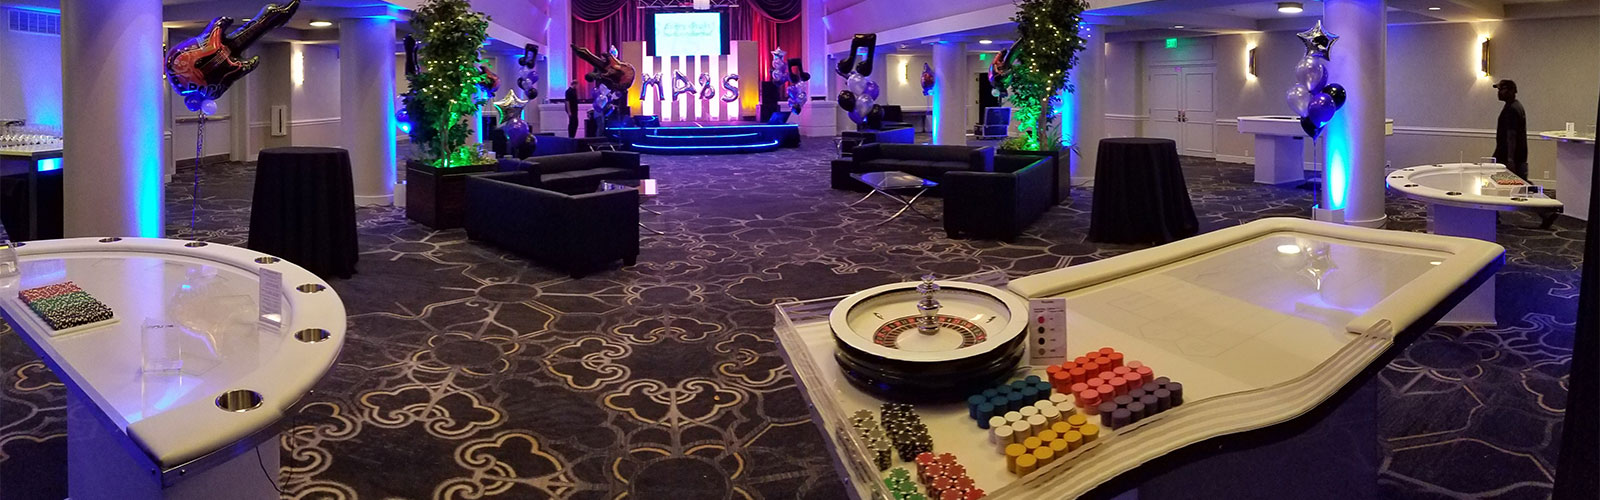 LED Casino